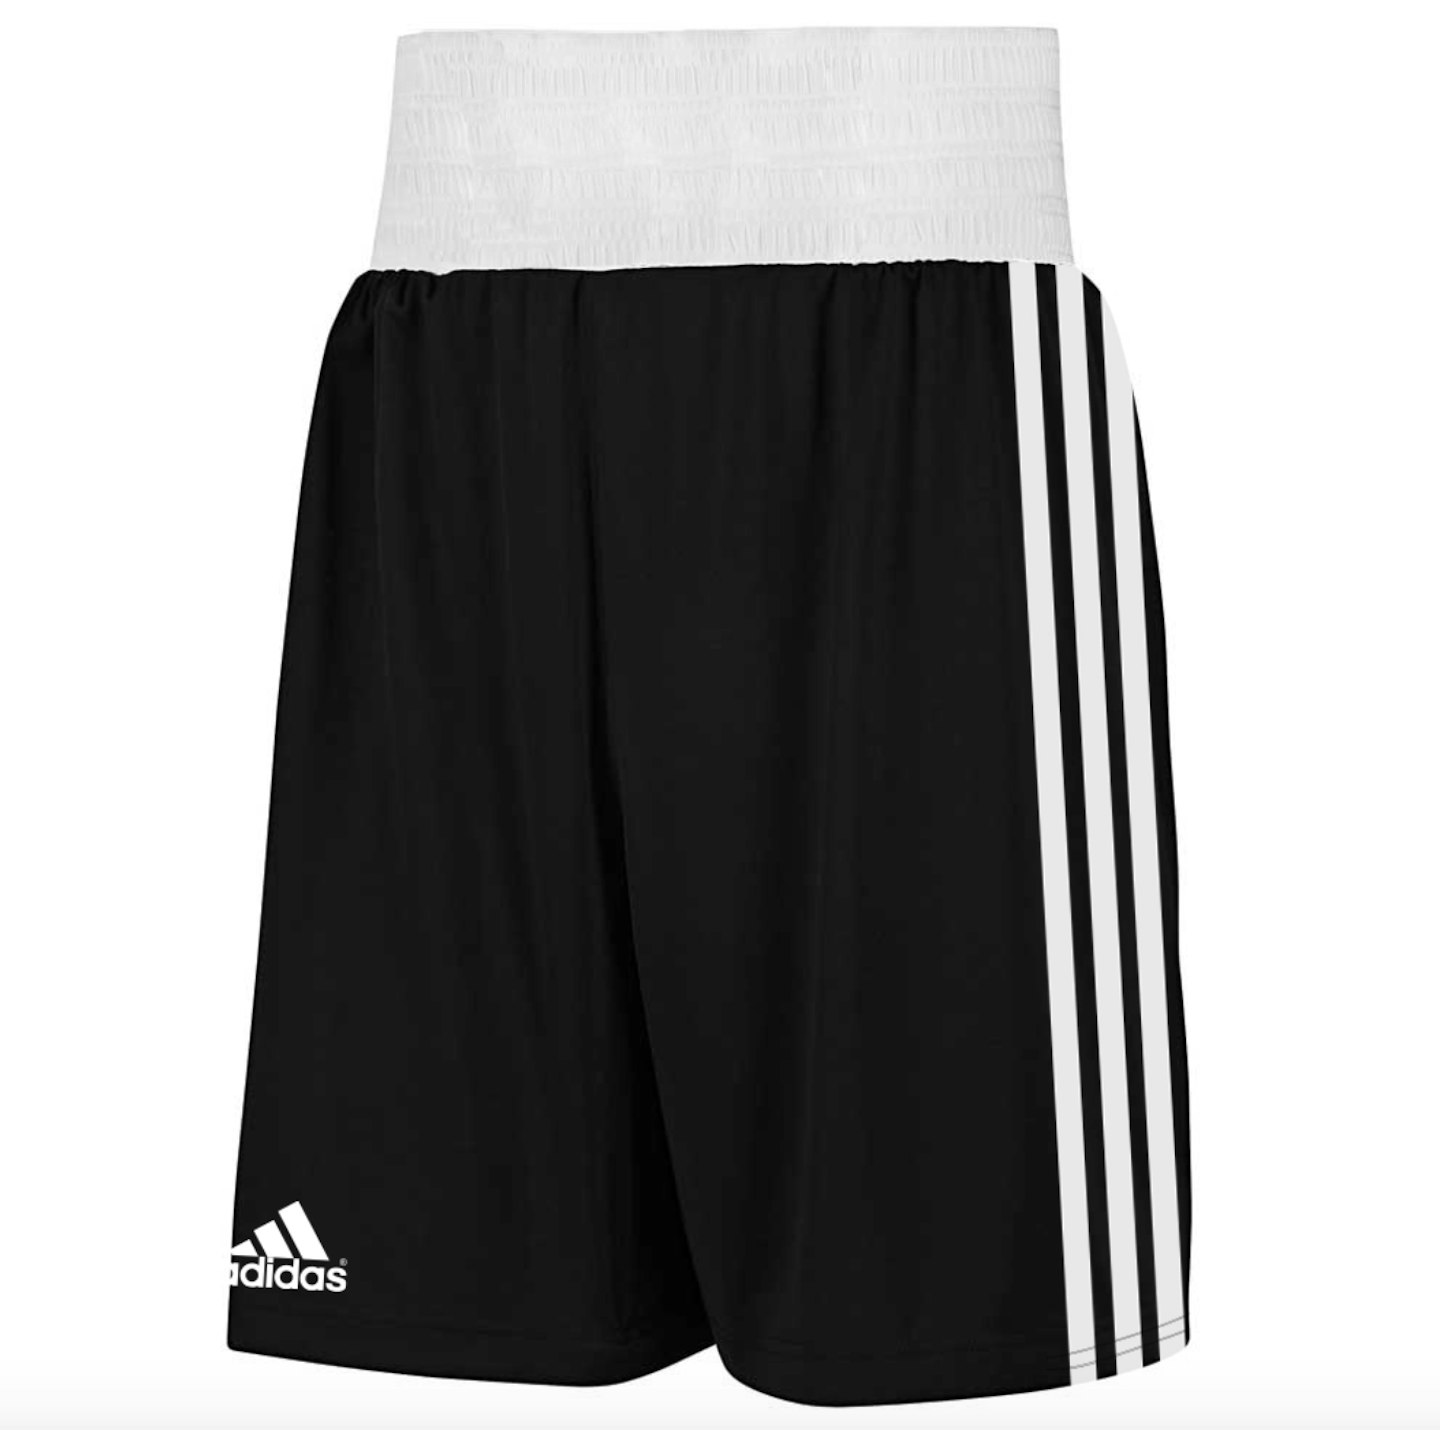 Adidas base punch II shorts